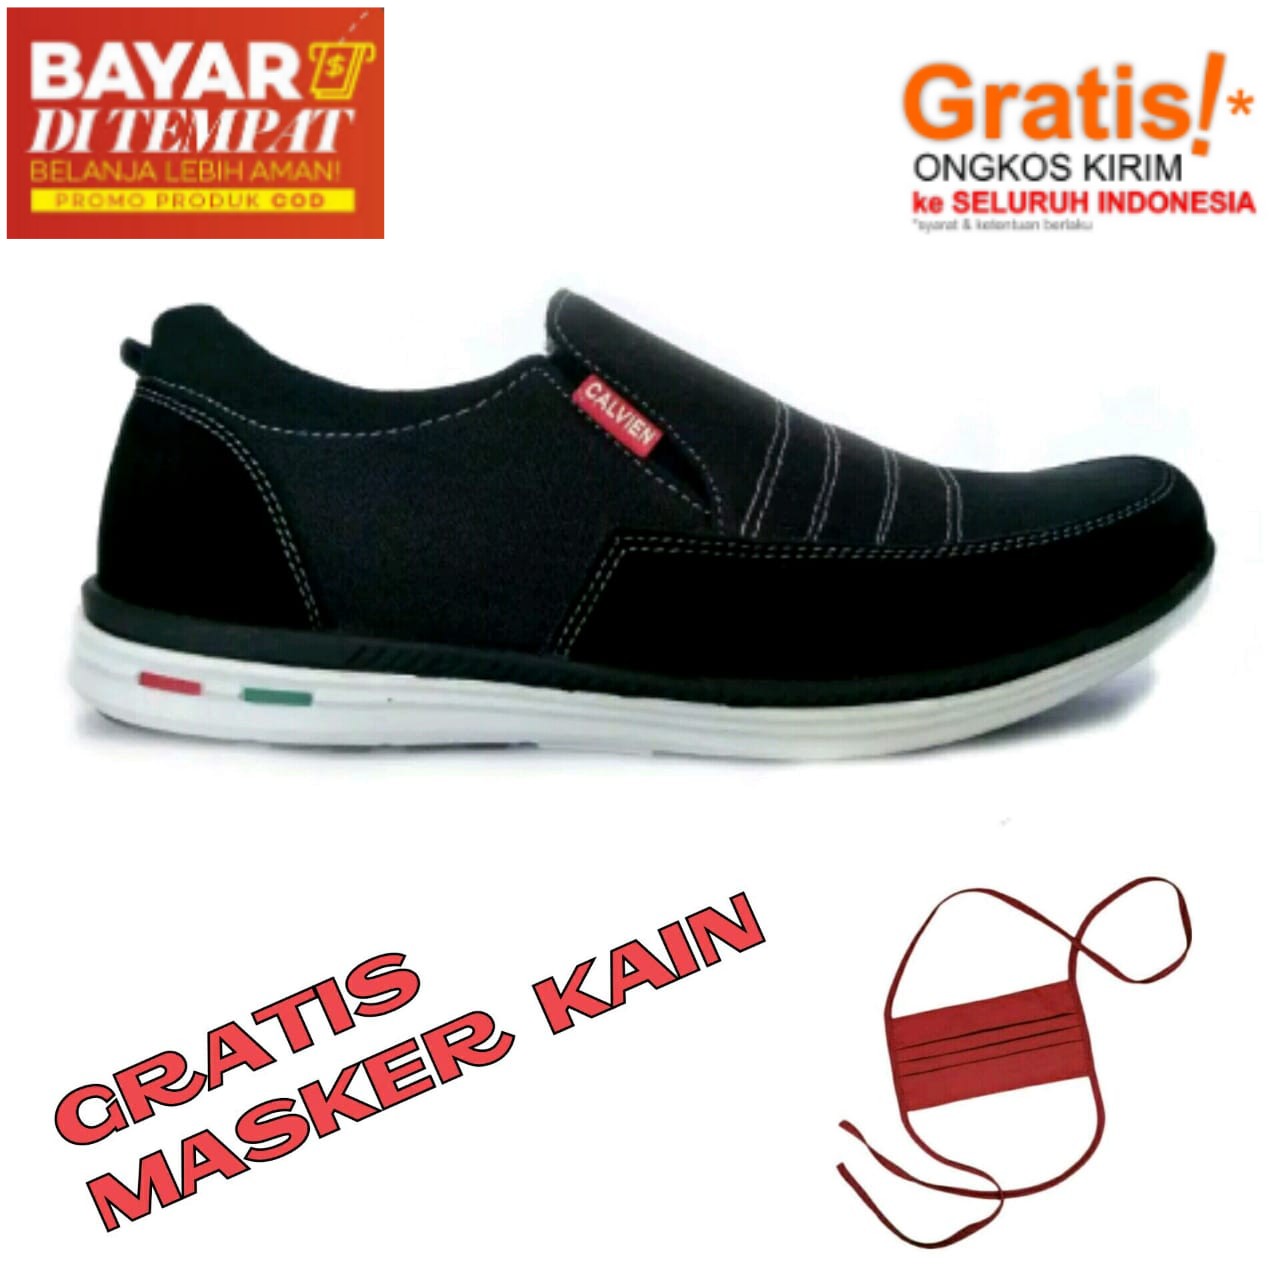 Jual Sepatu Pria Terbaru Import Harga Termurah - Hitam, 39 - Kota Bandung -  Mtnh.fashion